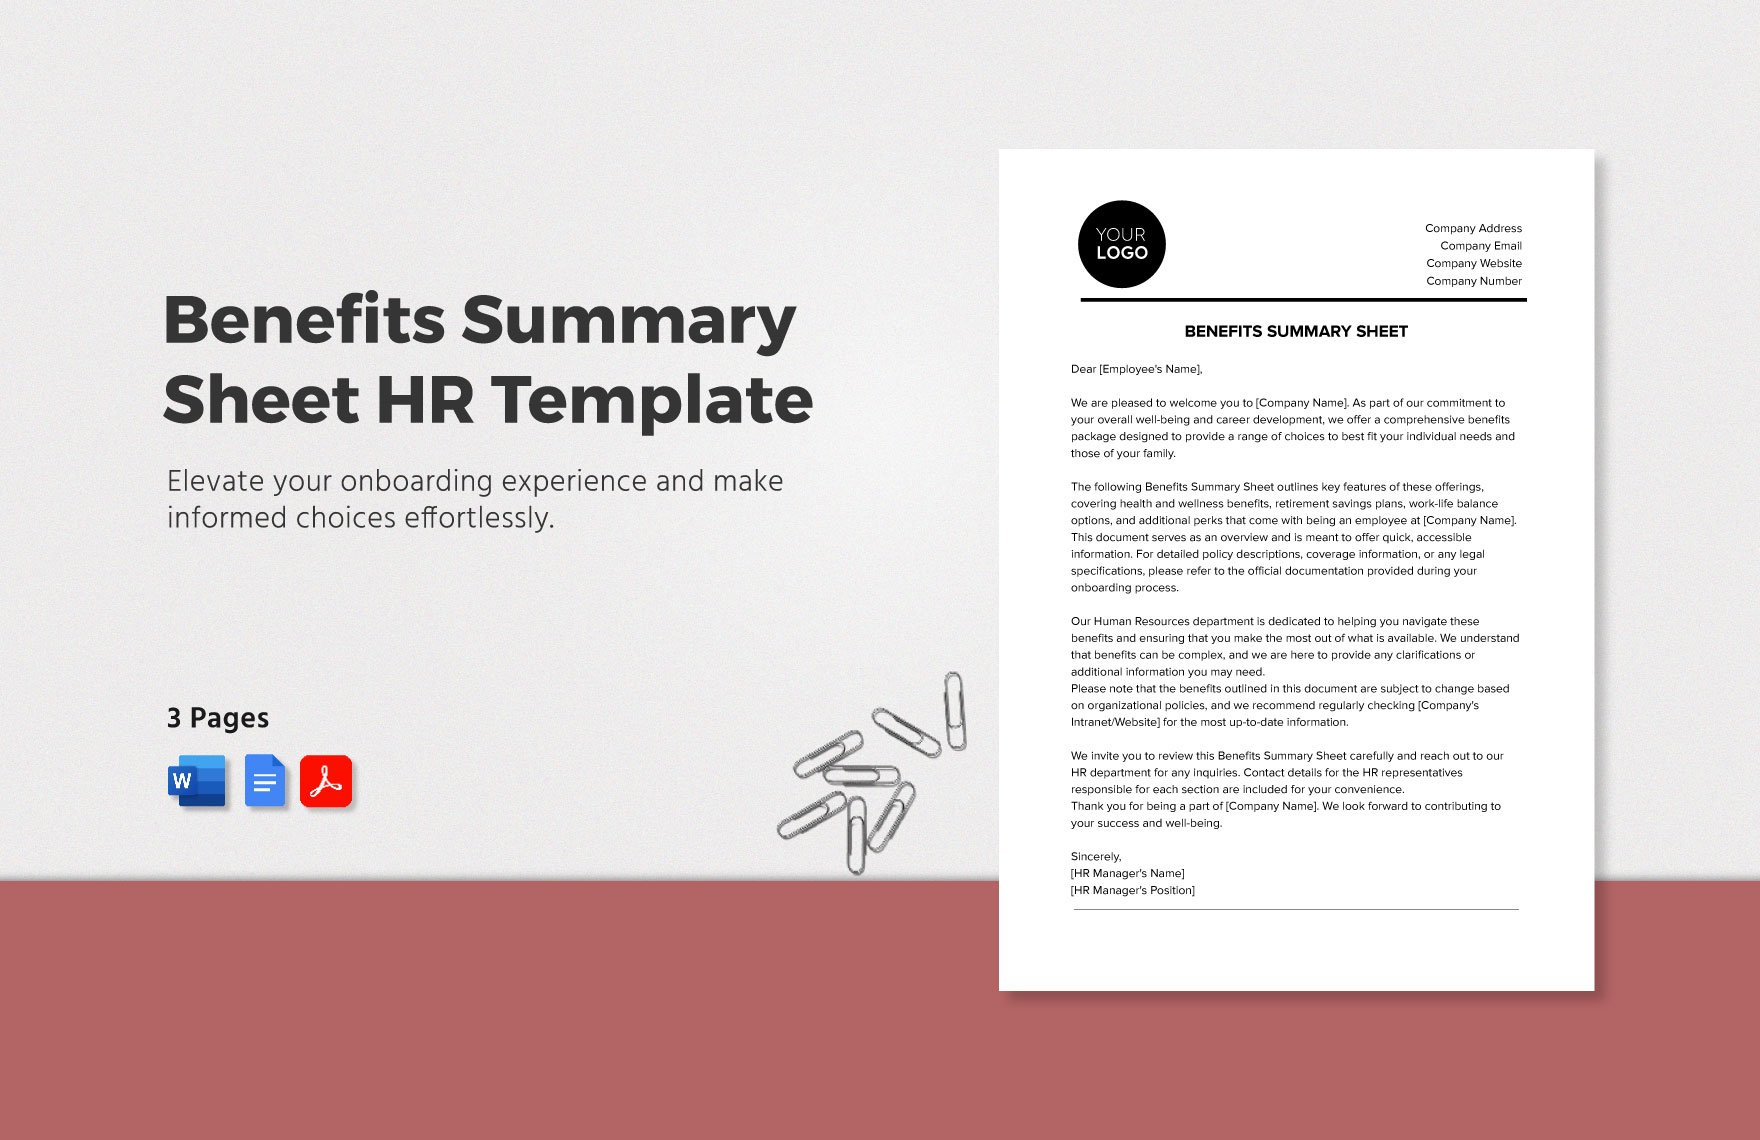 Benefits Summary Sheet HR Template